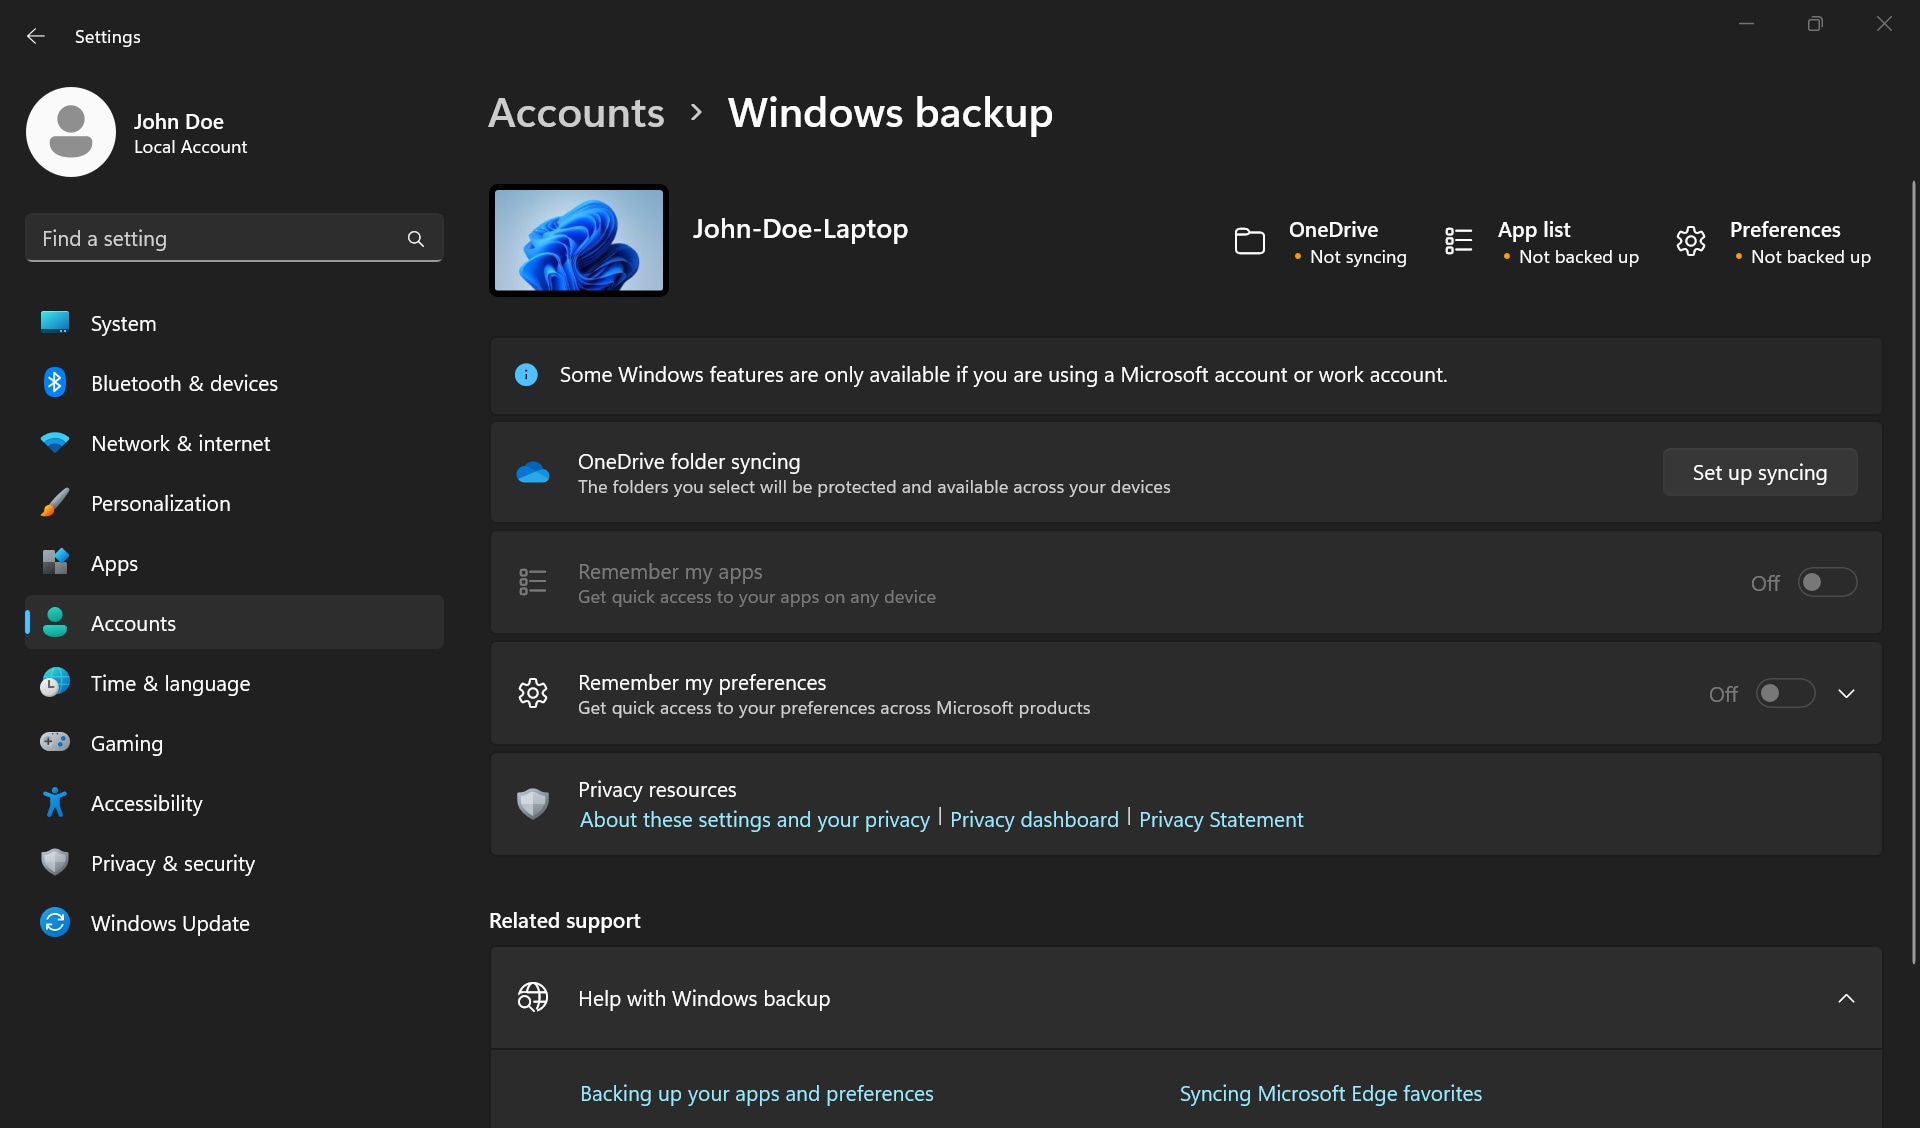 Windows-Backupeinstellungen in Windows mit Anzeige des OneDrive-Synchronisierungsstatus, der App-Liste und der Backupeinstellungen